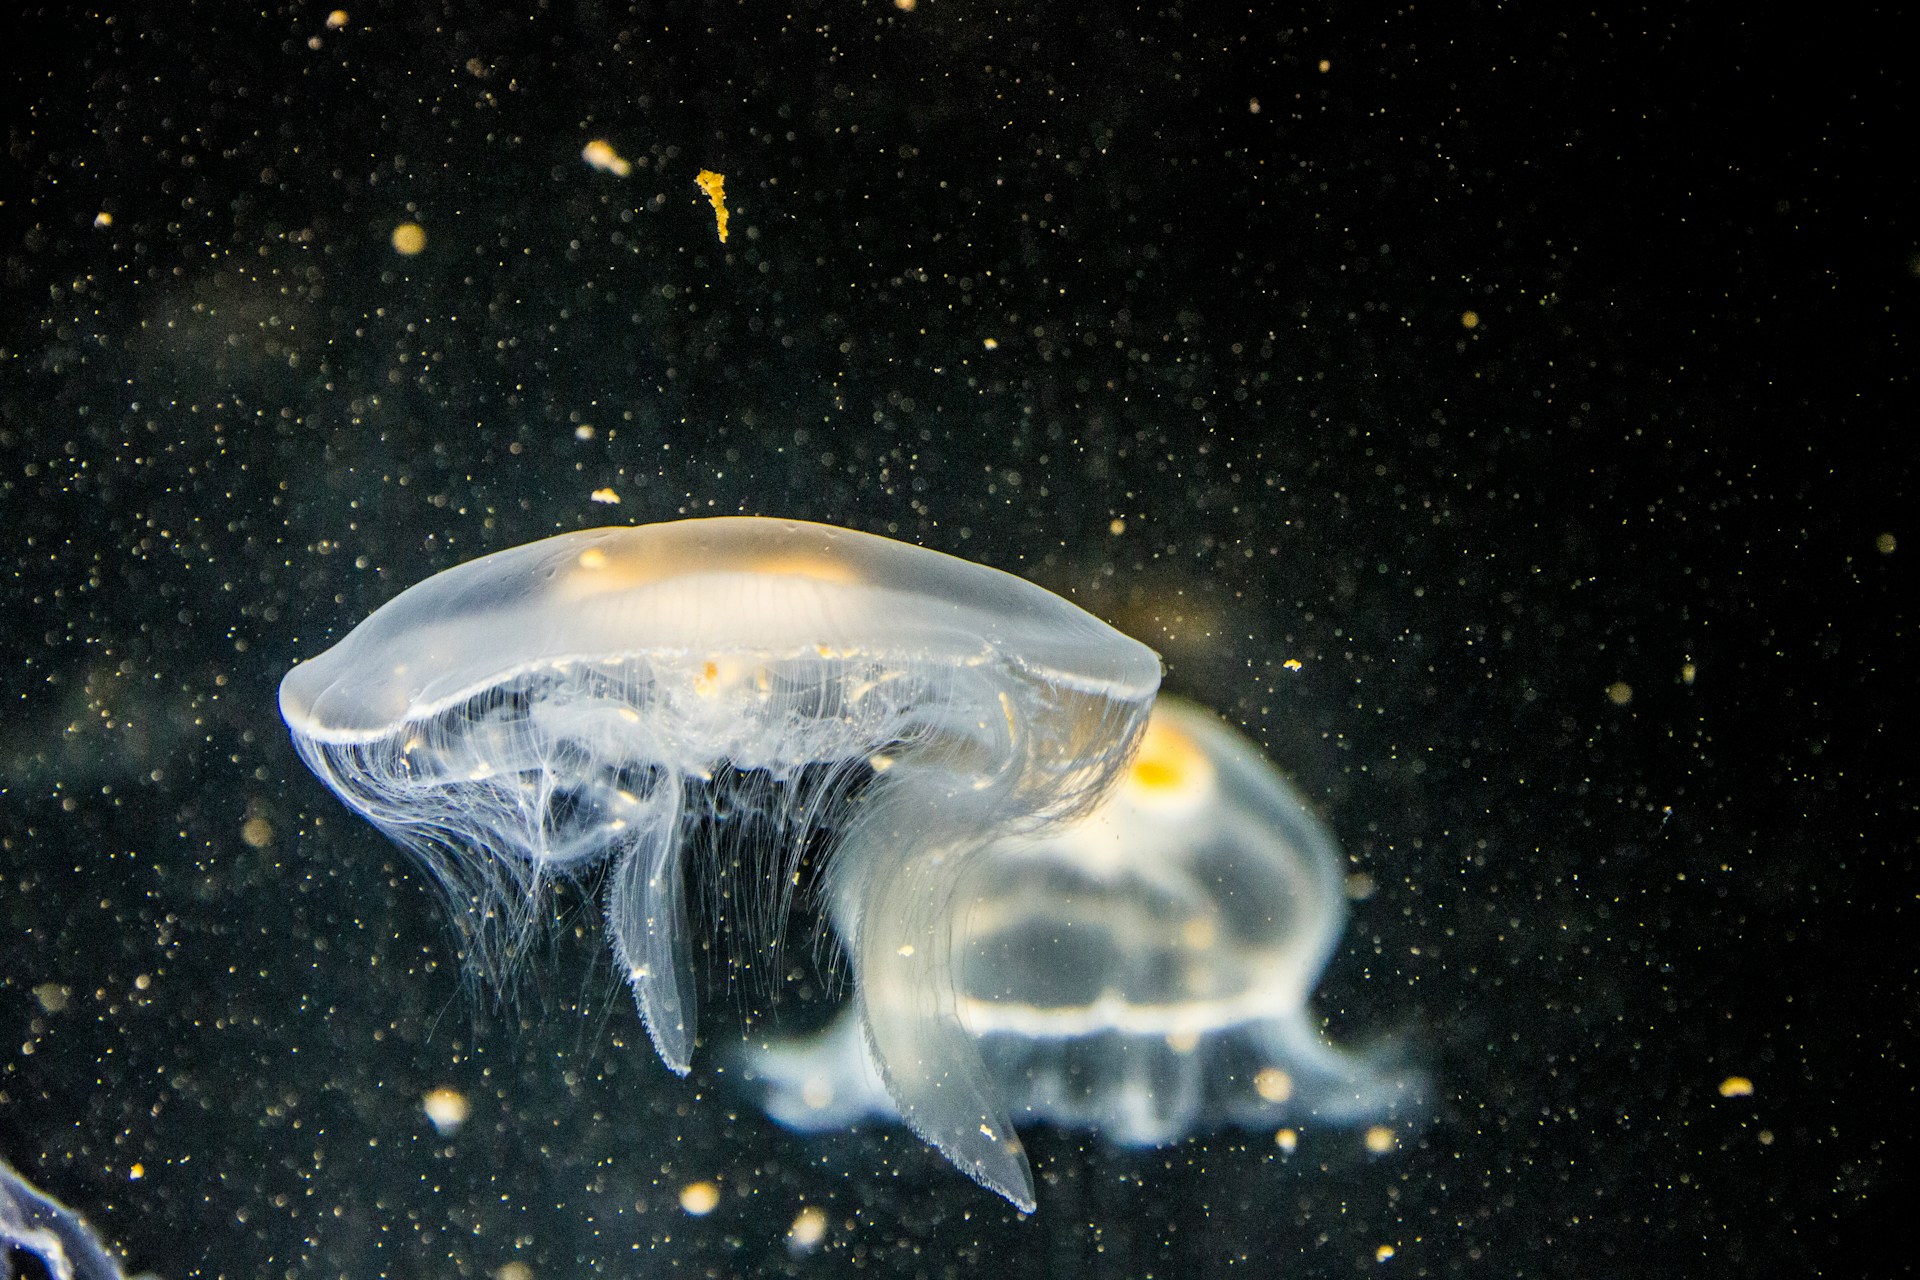 Jellyfish Jokes